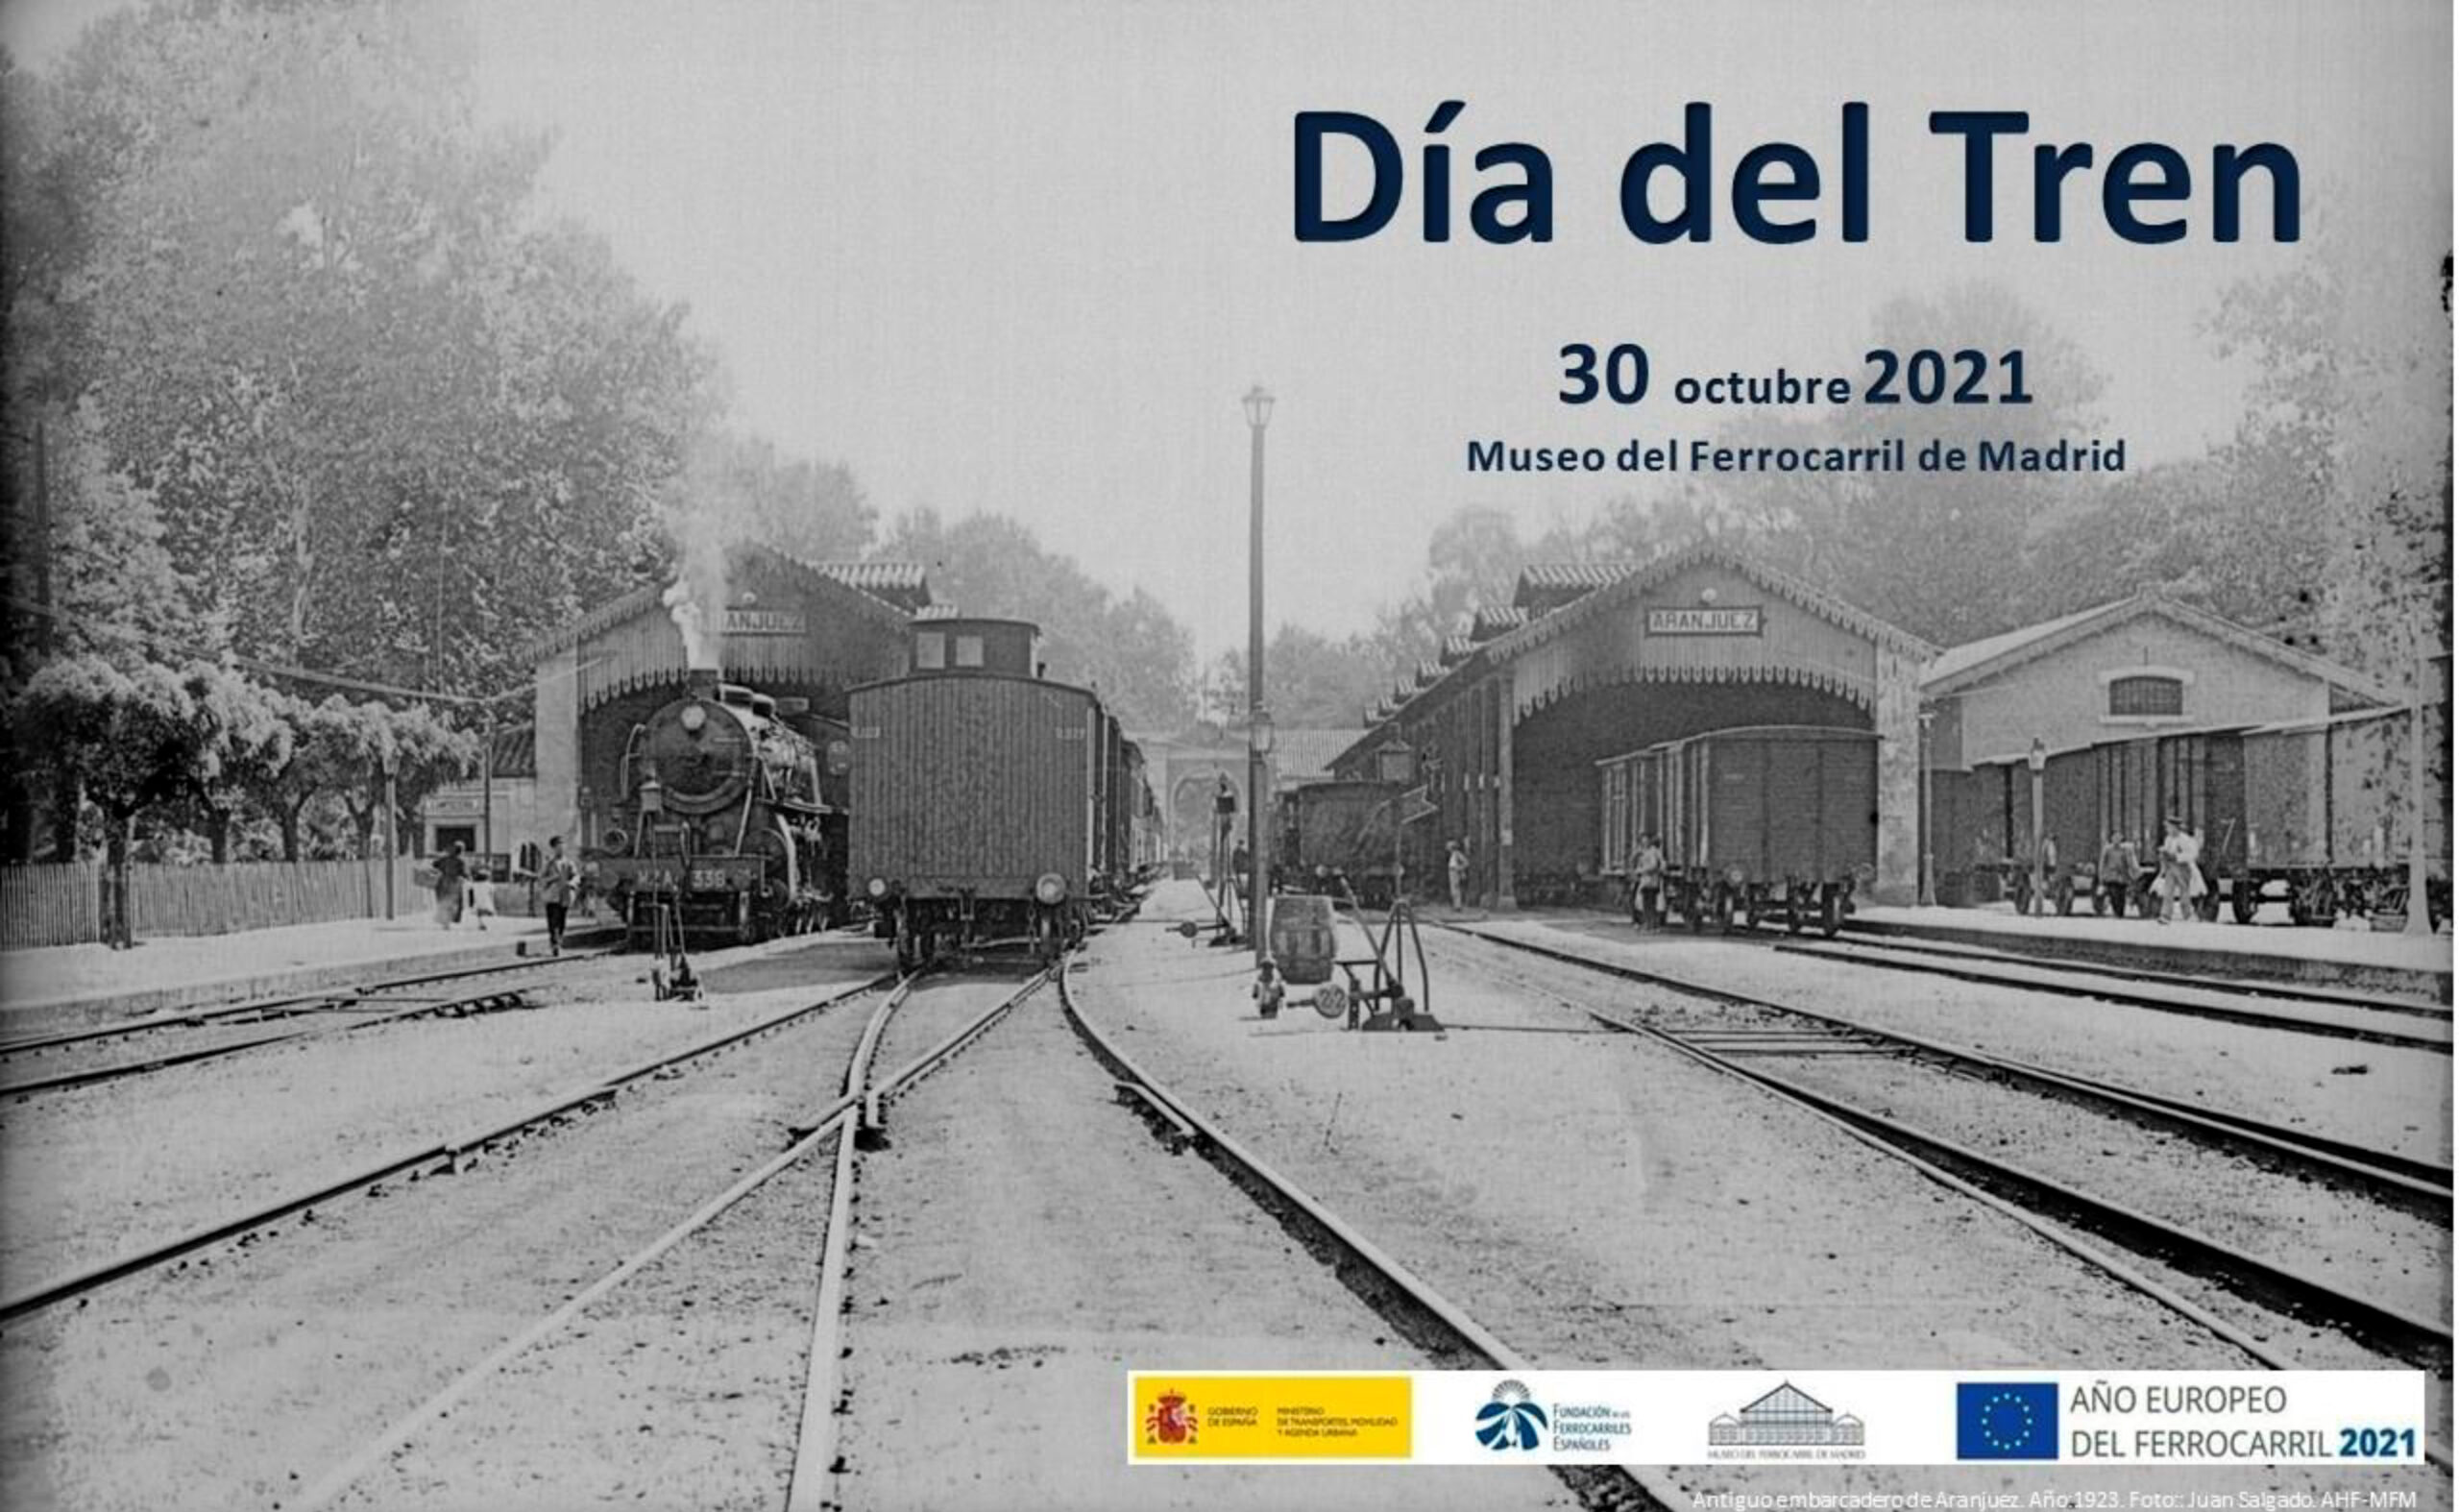 Entrada gratis al Museo del Ferrocarril de Madrid por el Día del Tren 2021